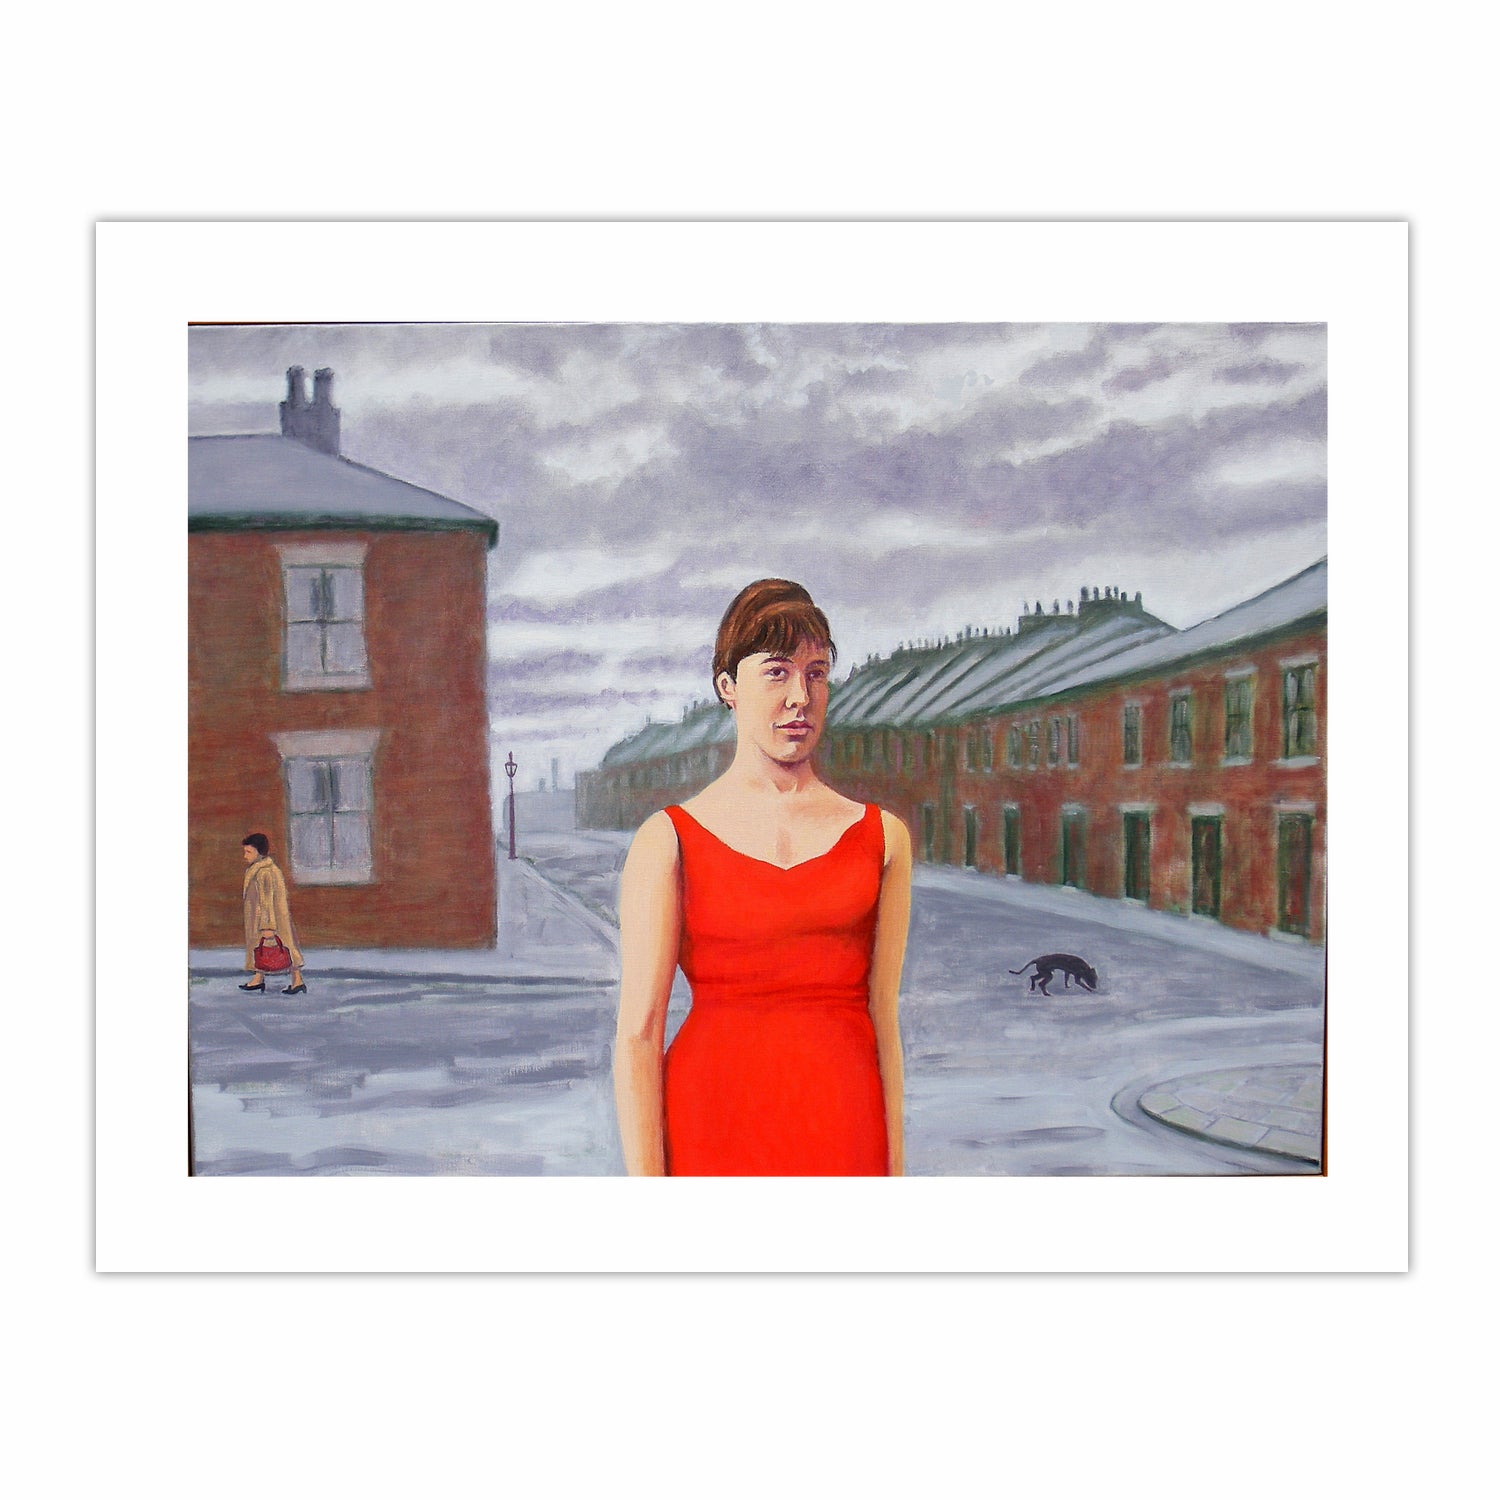 Geordie Girl in a red dress